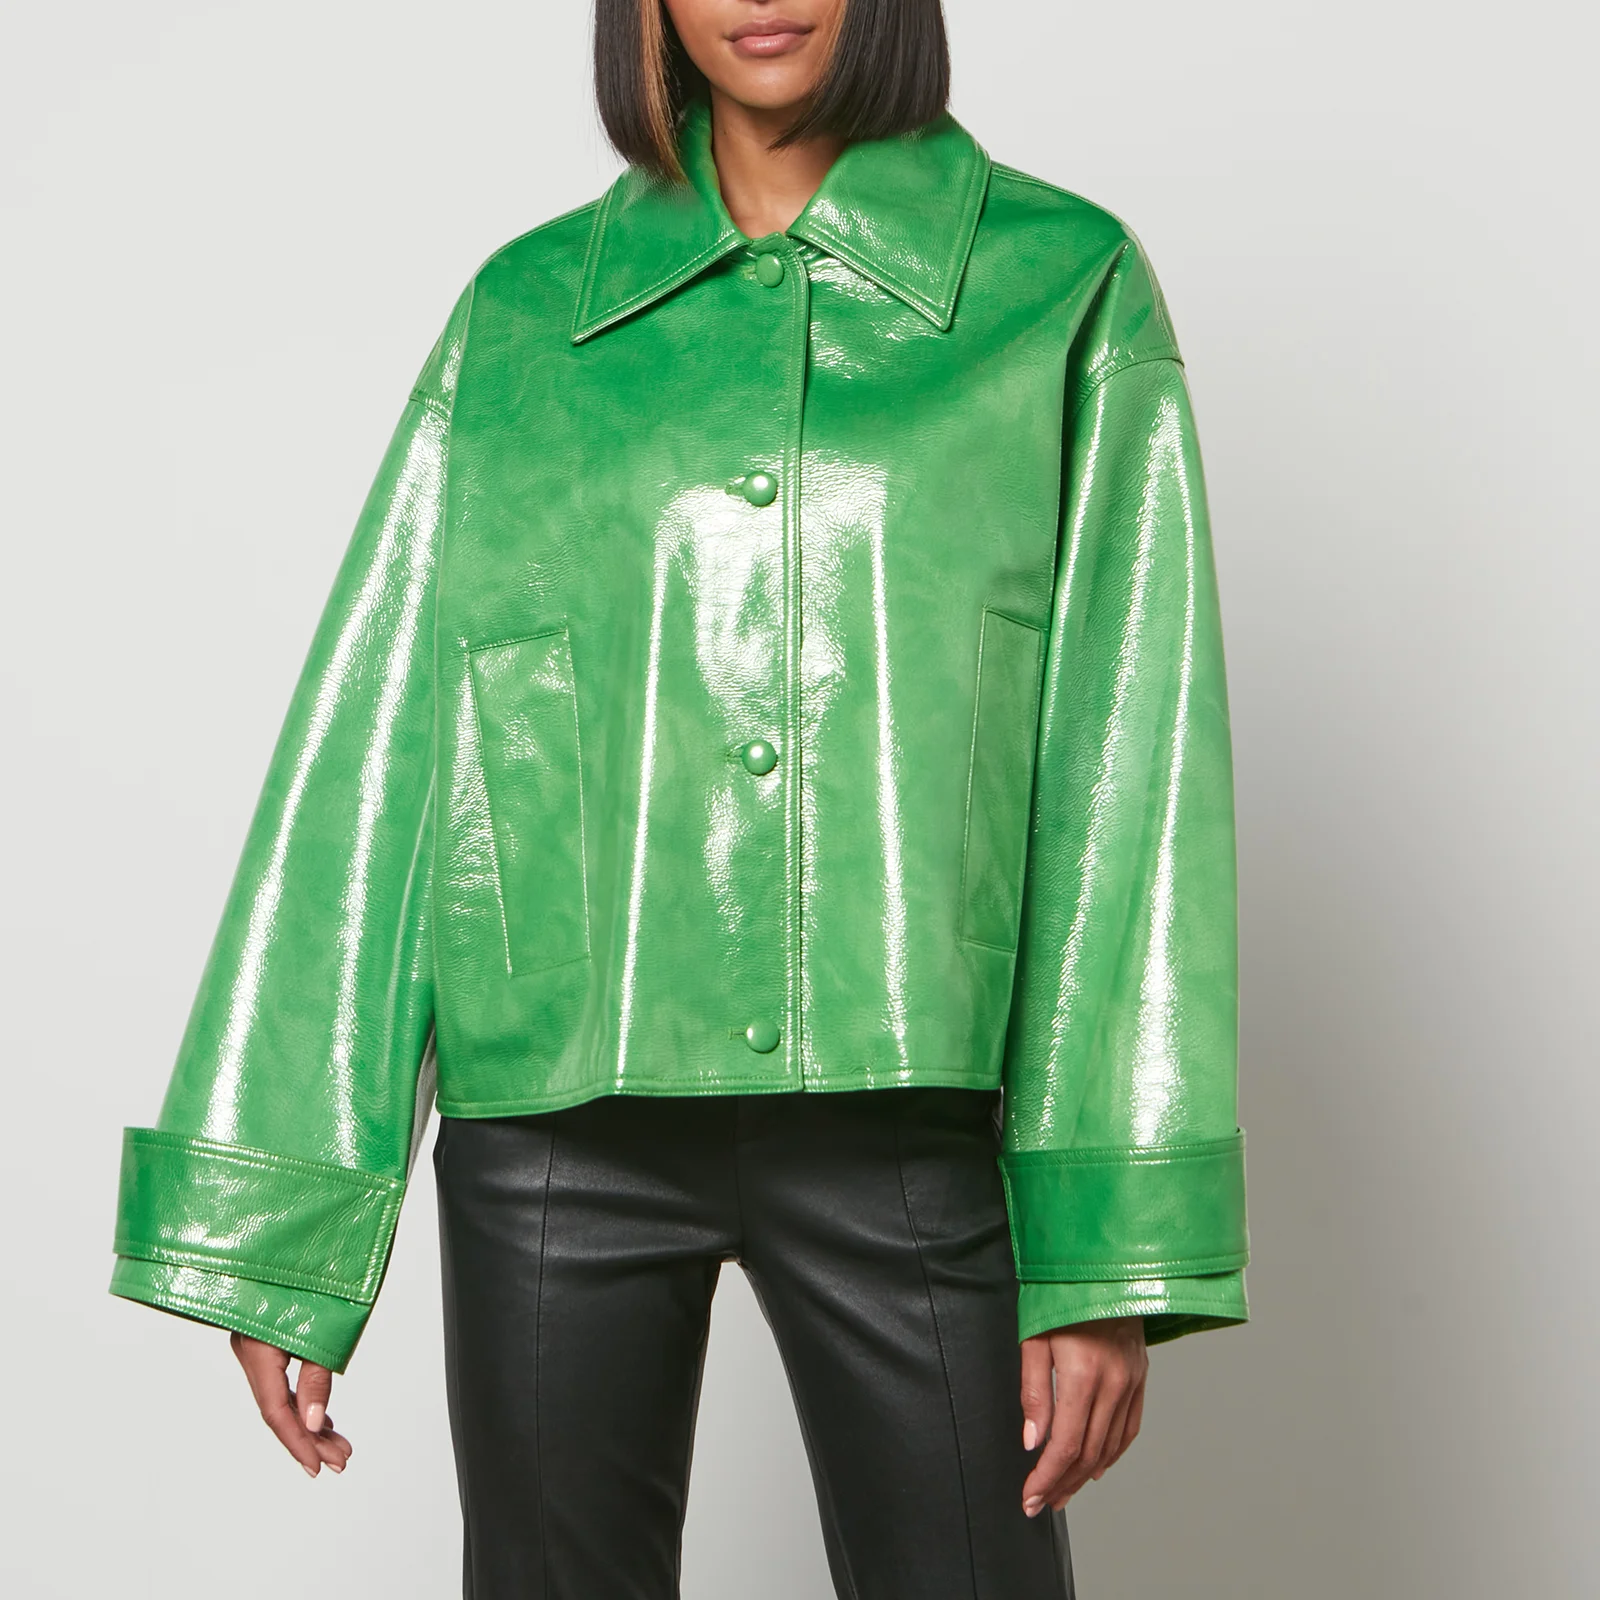 Stand Studio Women's Charleen Jacket - Bright Green Image 1